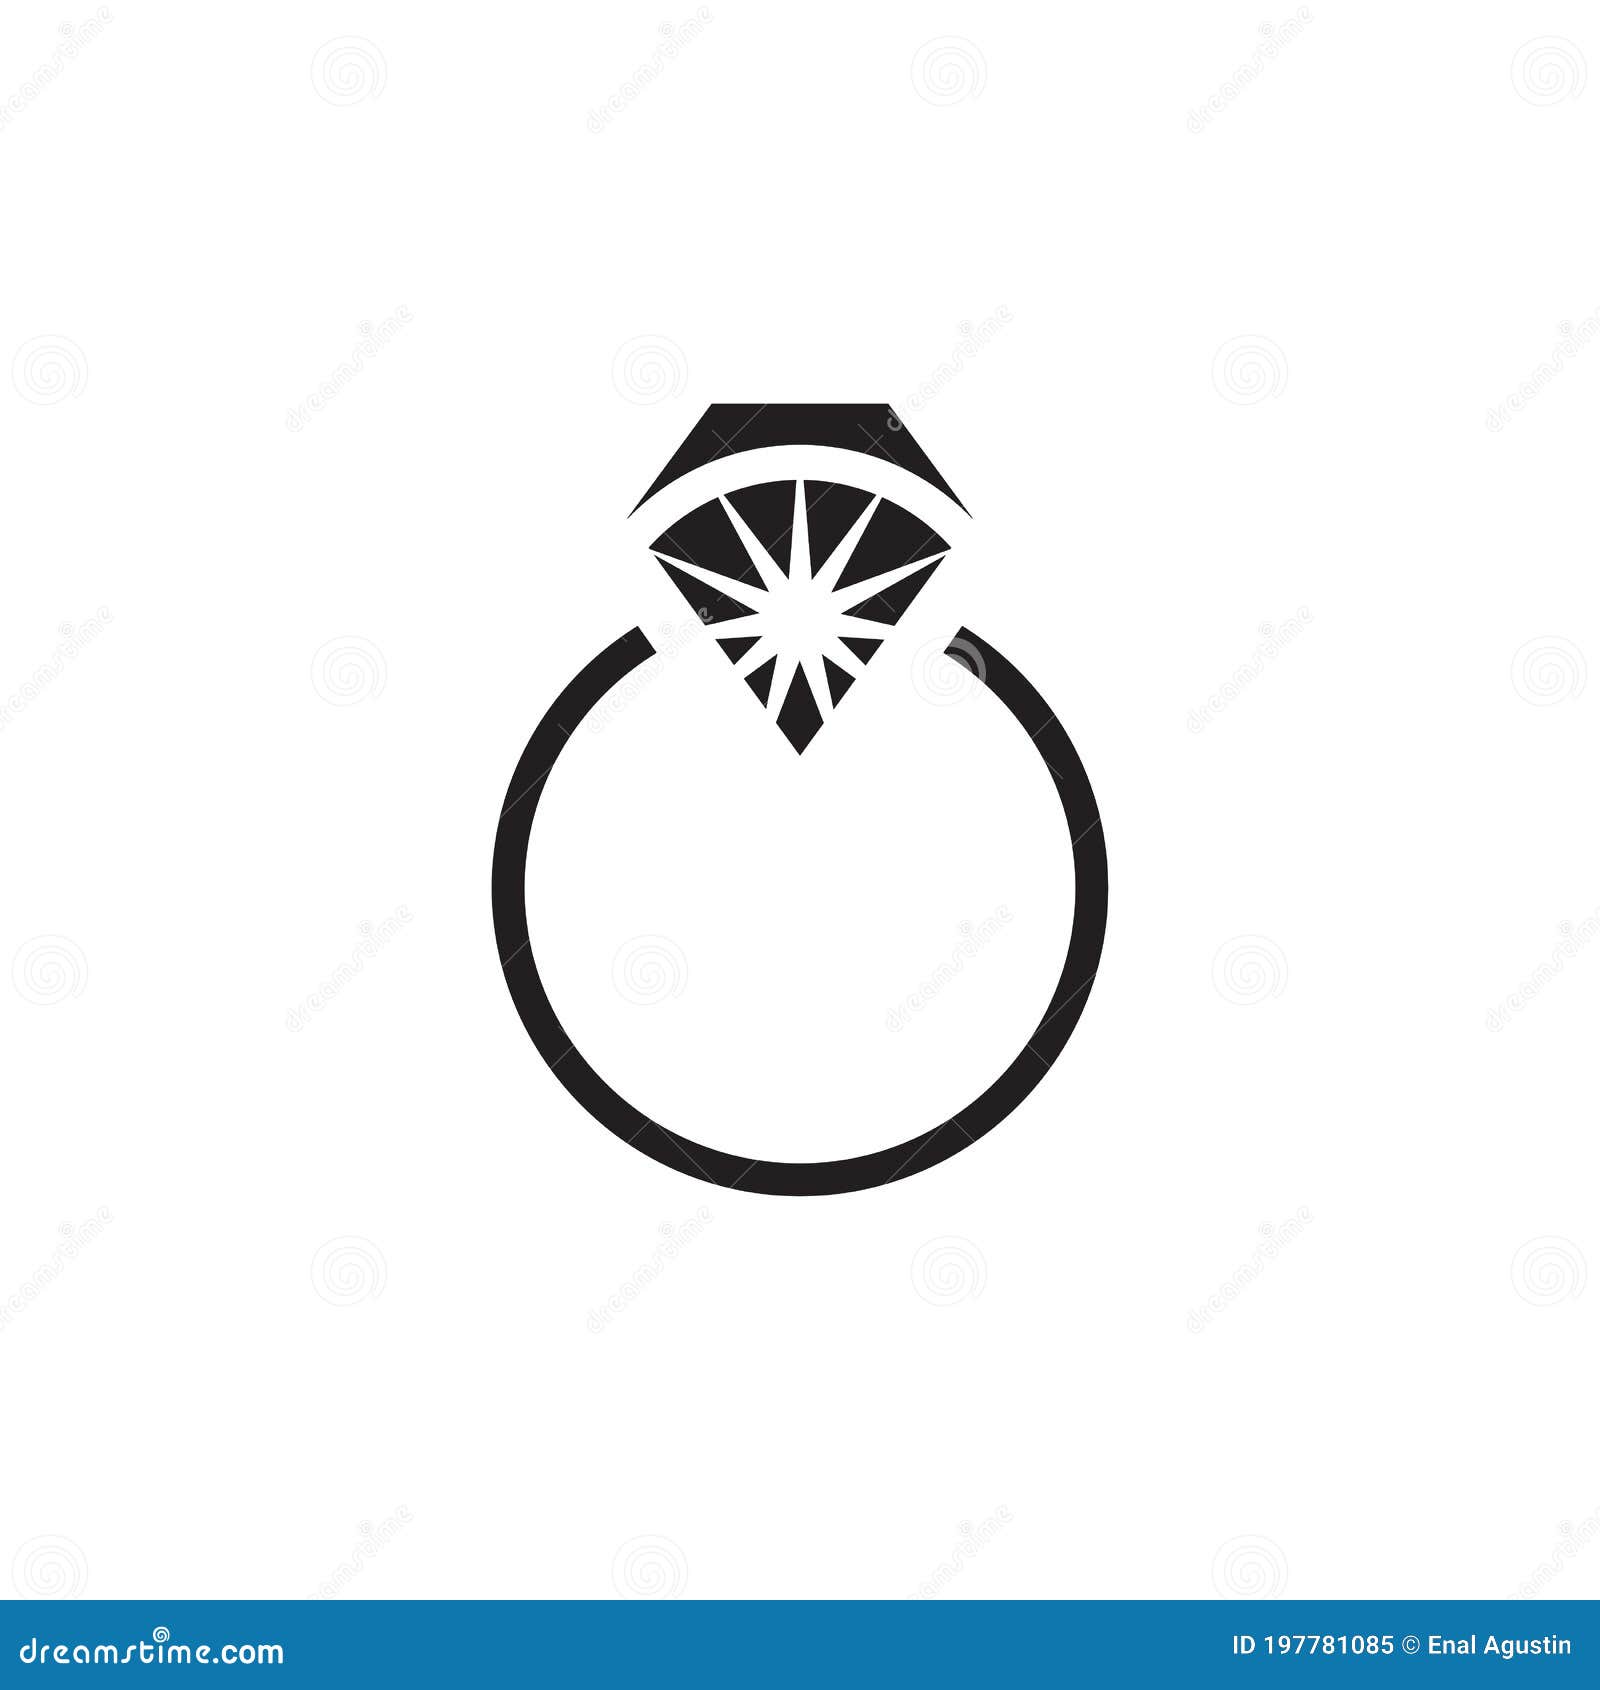 Bold, Upmarket Logo Design for 3 RING ARMOR by Ronelogo | Design #18813395